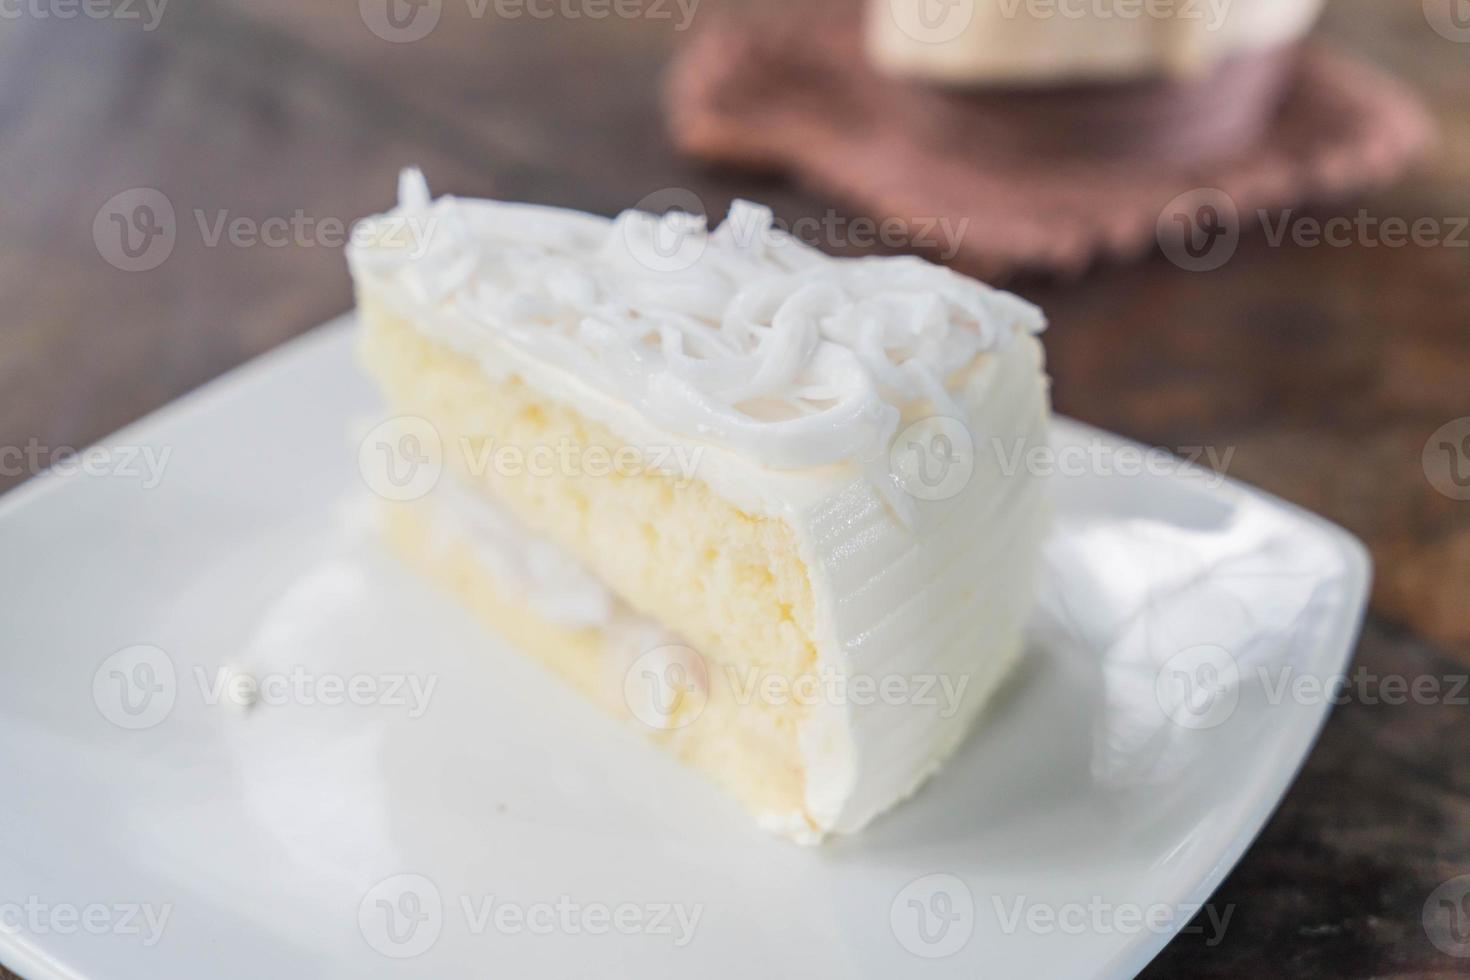 bolo de coco no prato branco foto